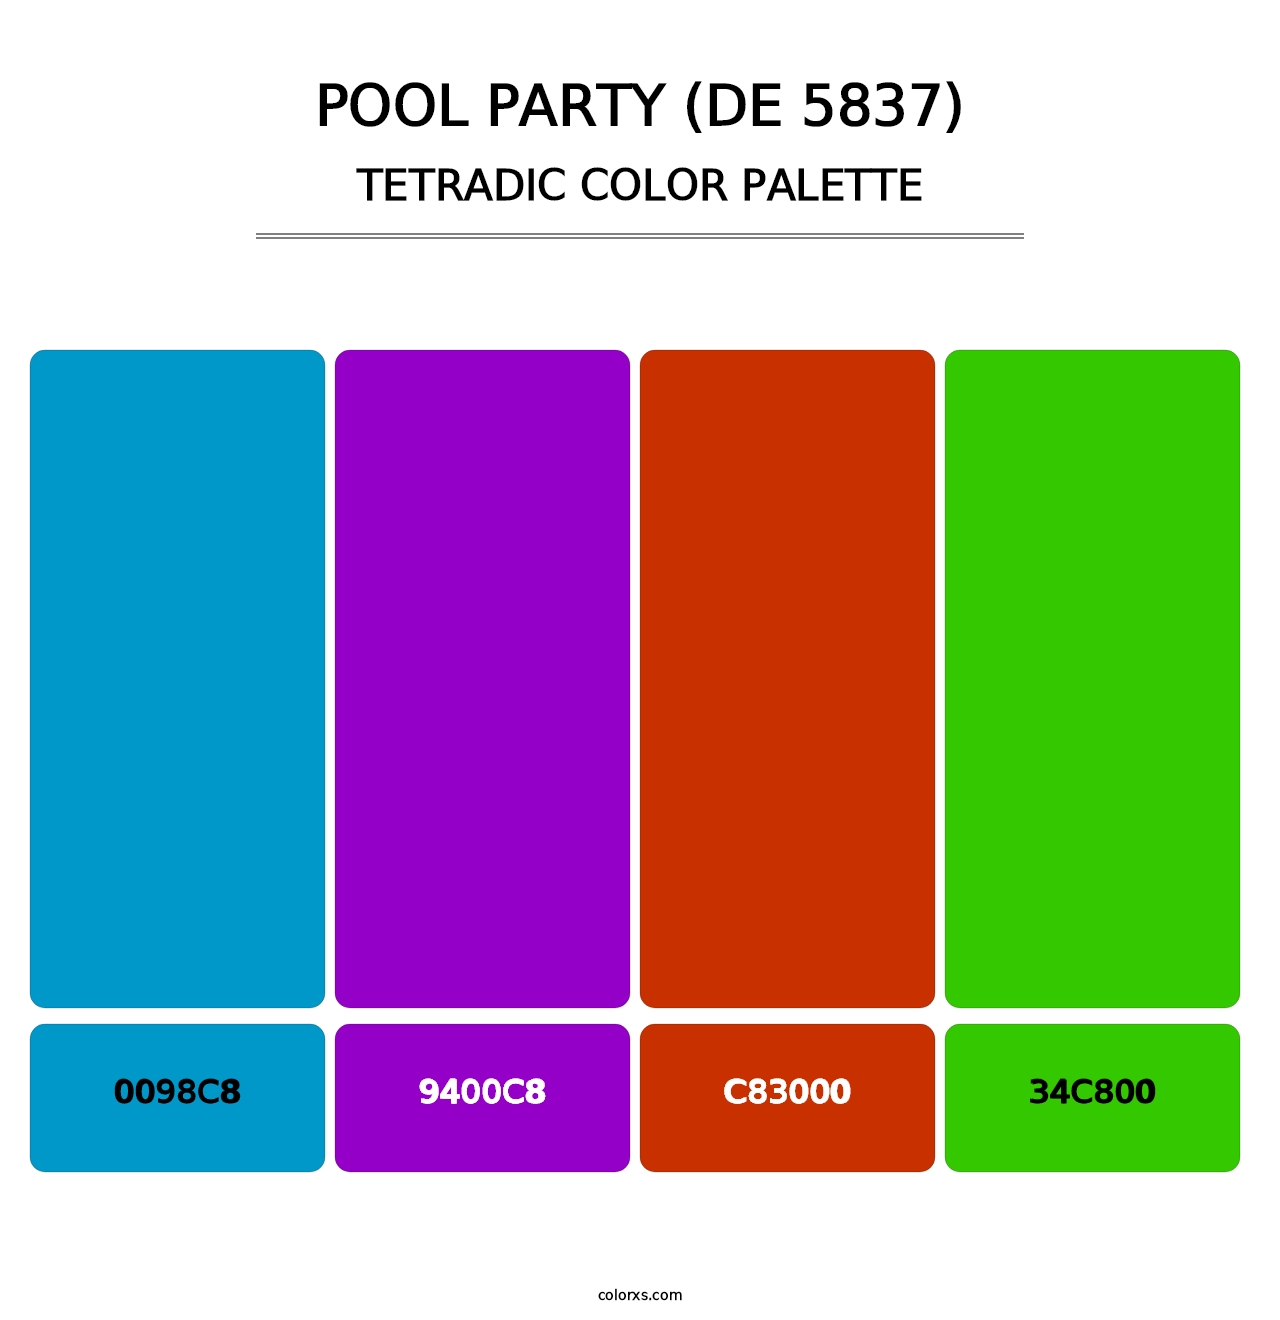 Pool Party (DE 5837) - Tetradic Color Palette